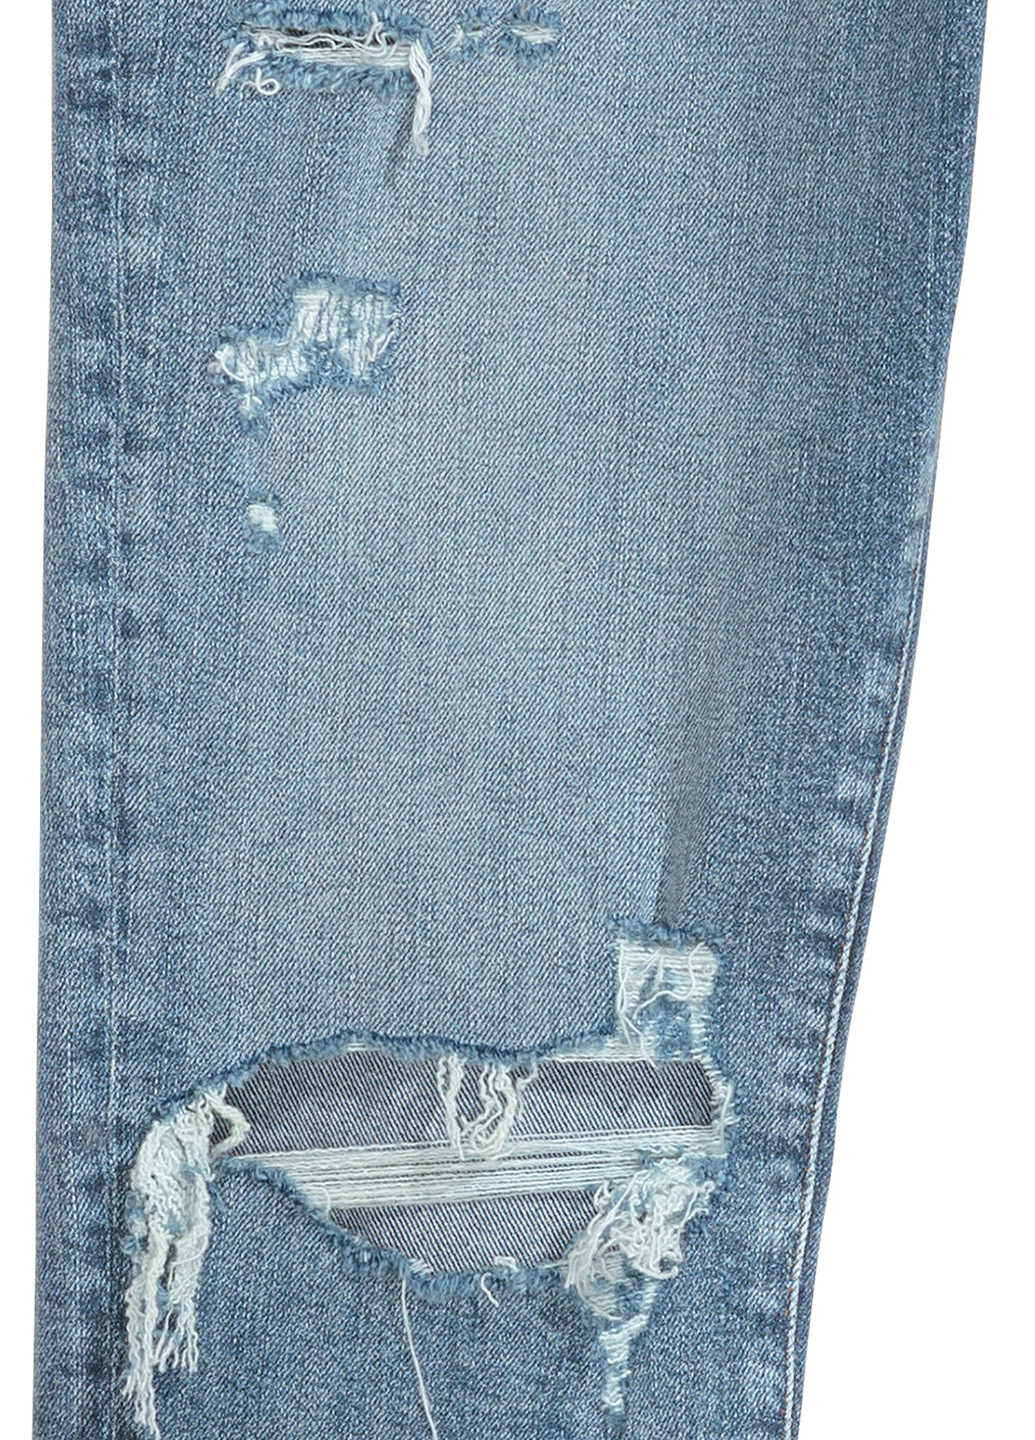 Джинси H&M завужені однотонні блакитні джинсові